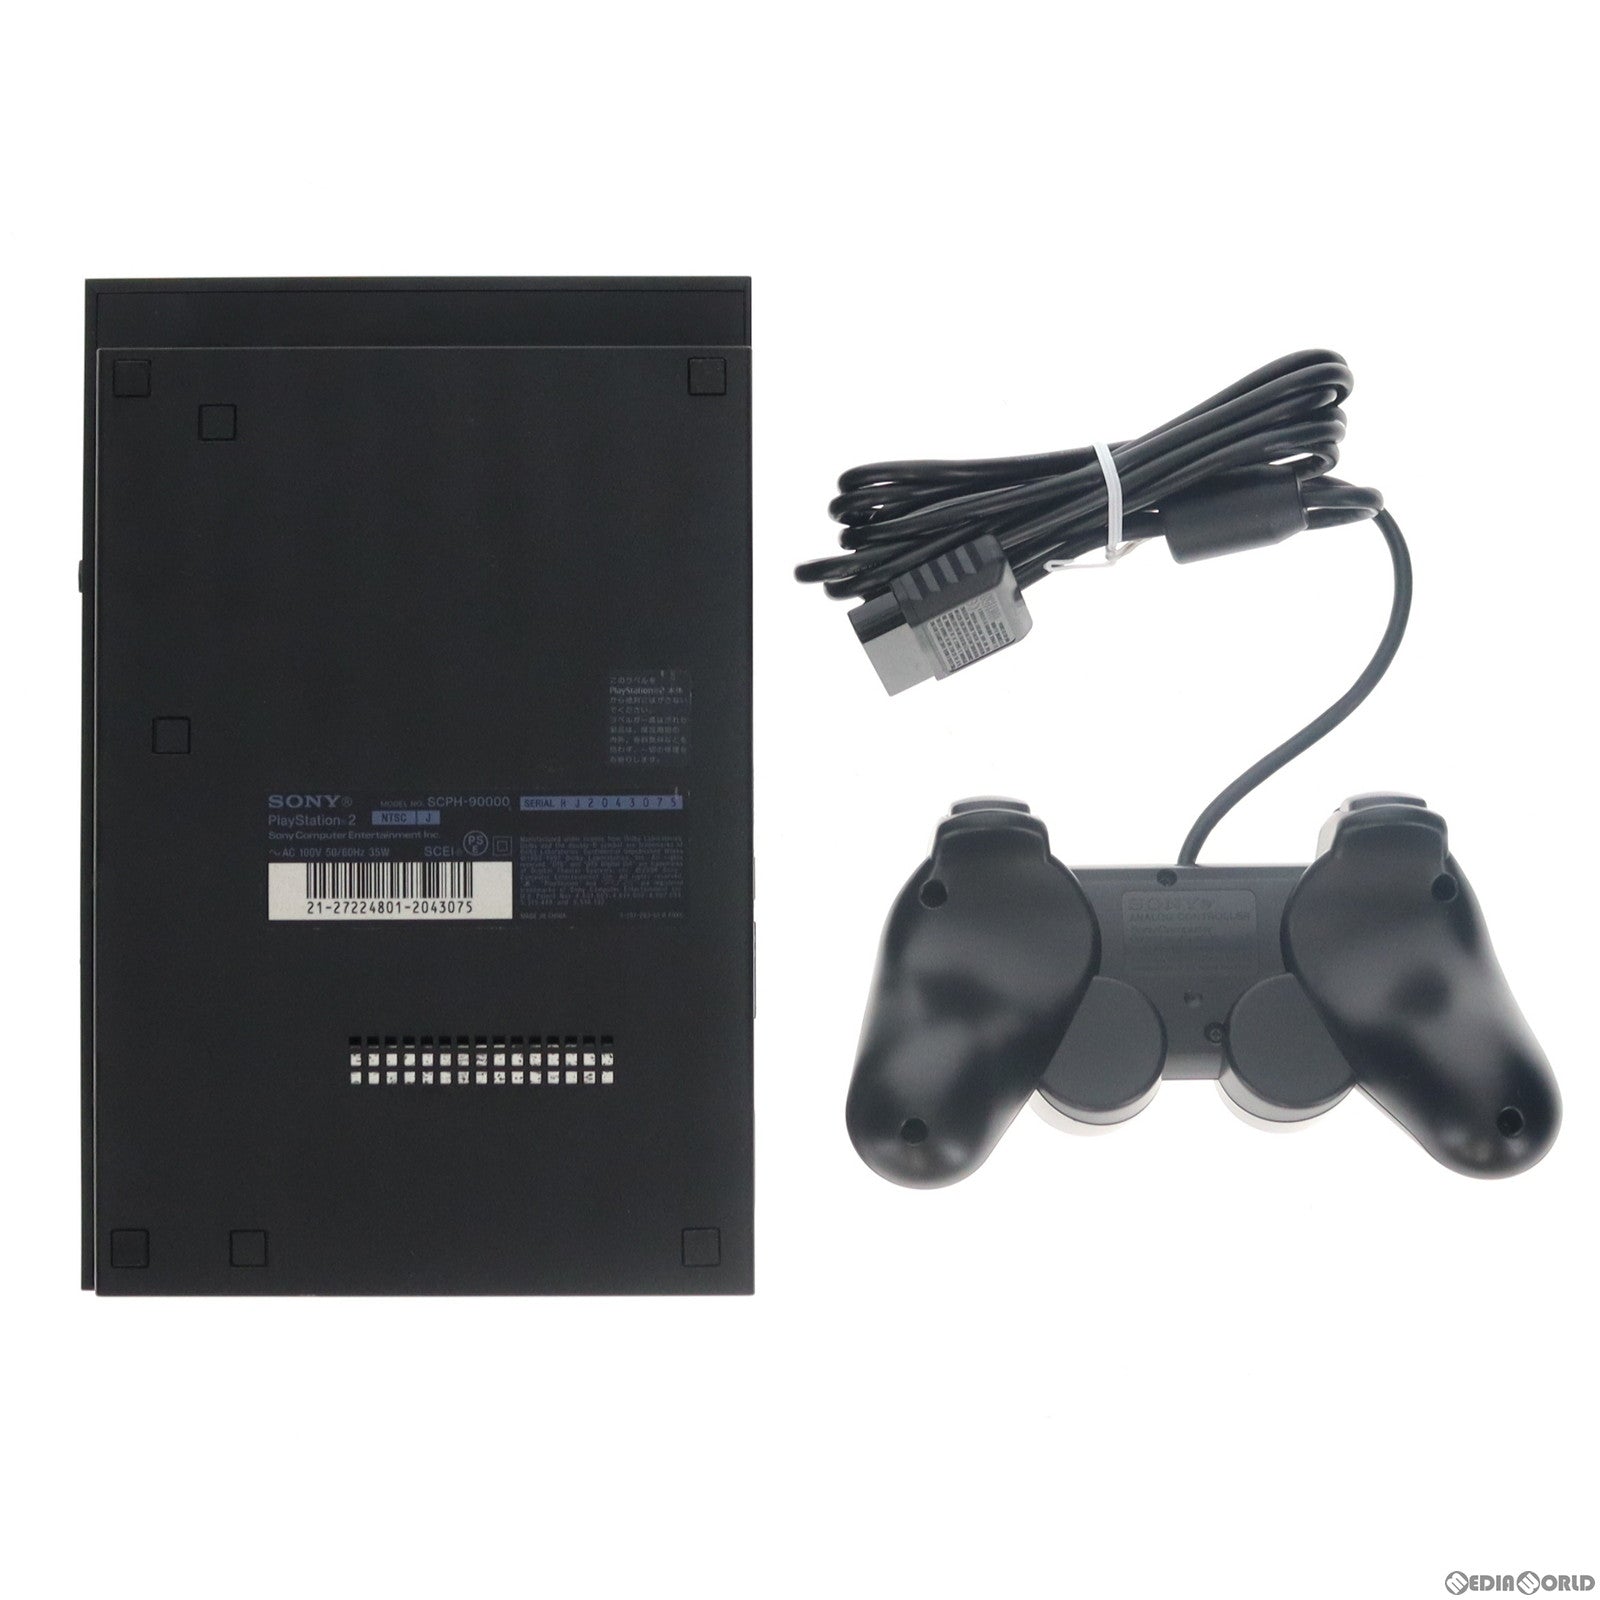 【中古即納】[本体][PS2]プレイステーション2 PlayStation2 チャコール・ブラック(SCPH-90000CB)(20071122)